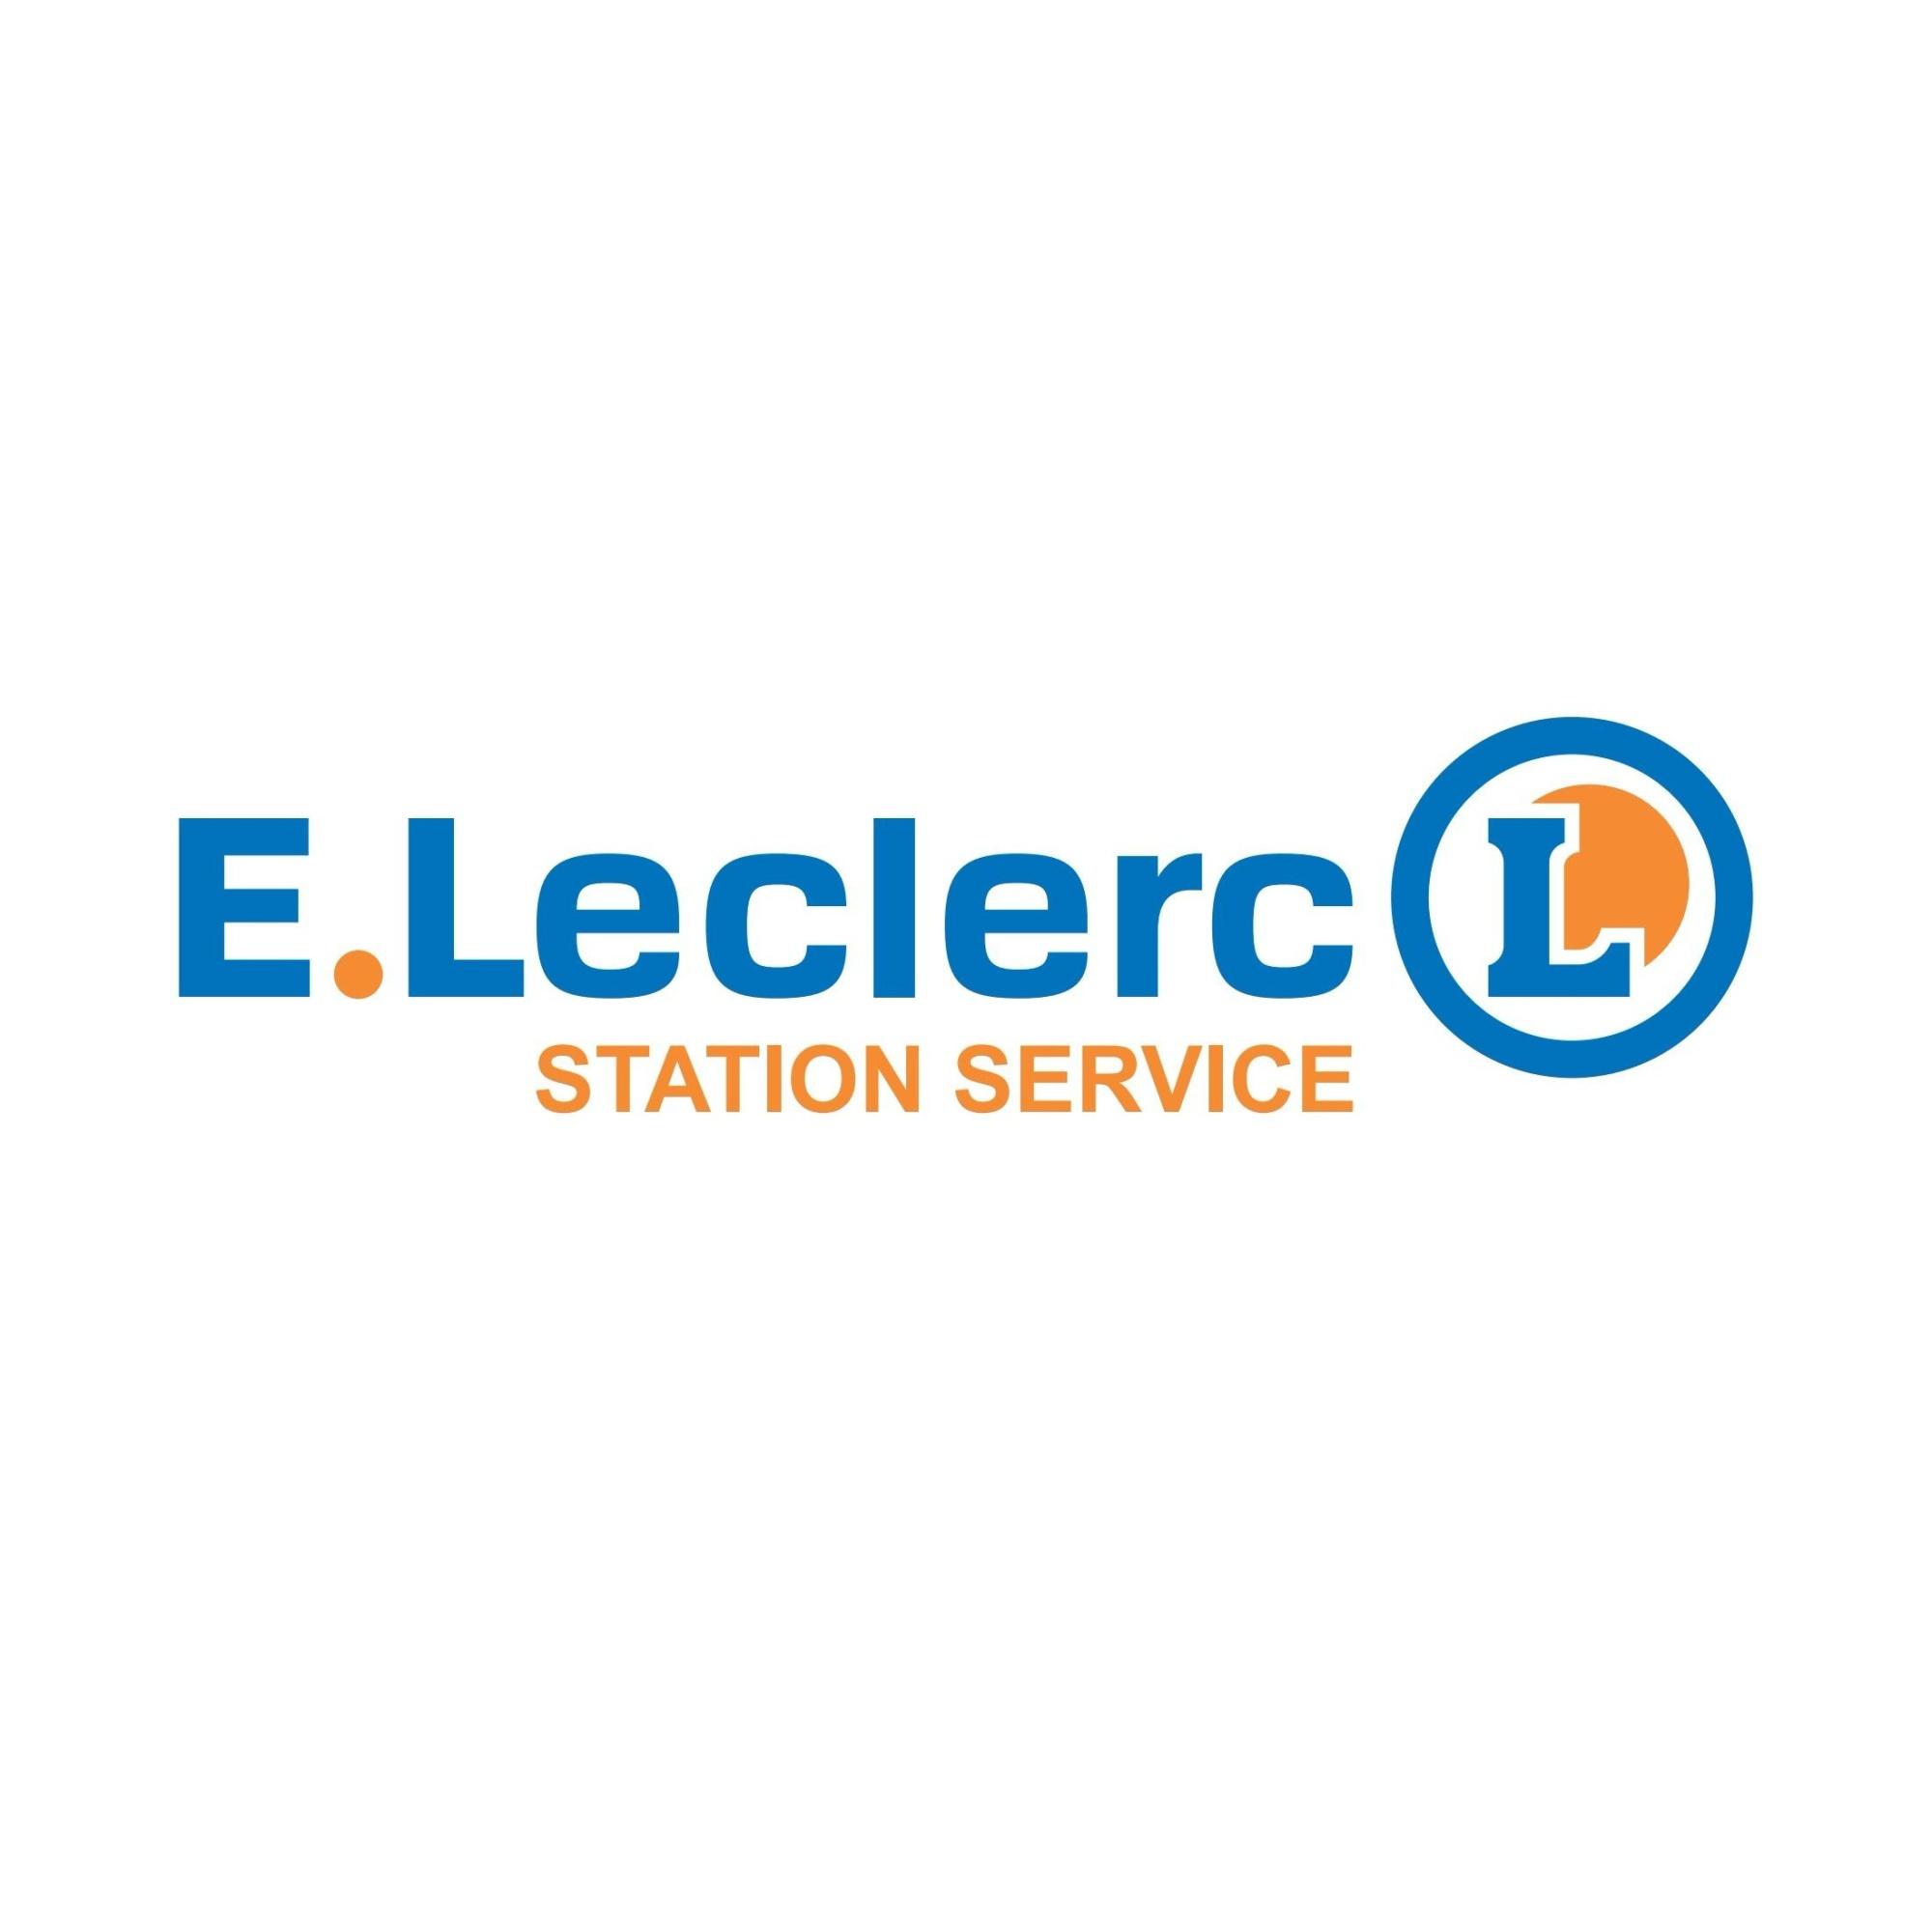 E.leclerc Station Service Cognac